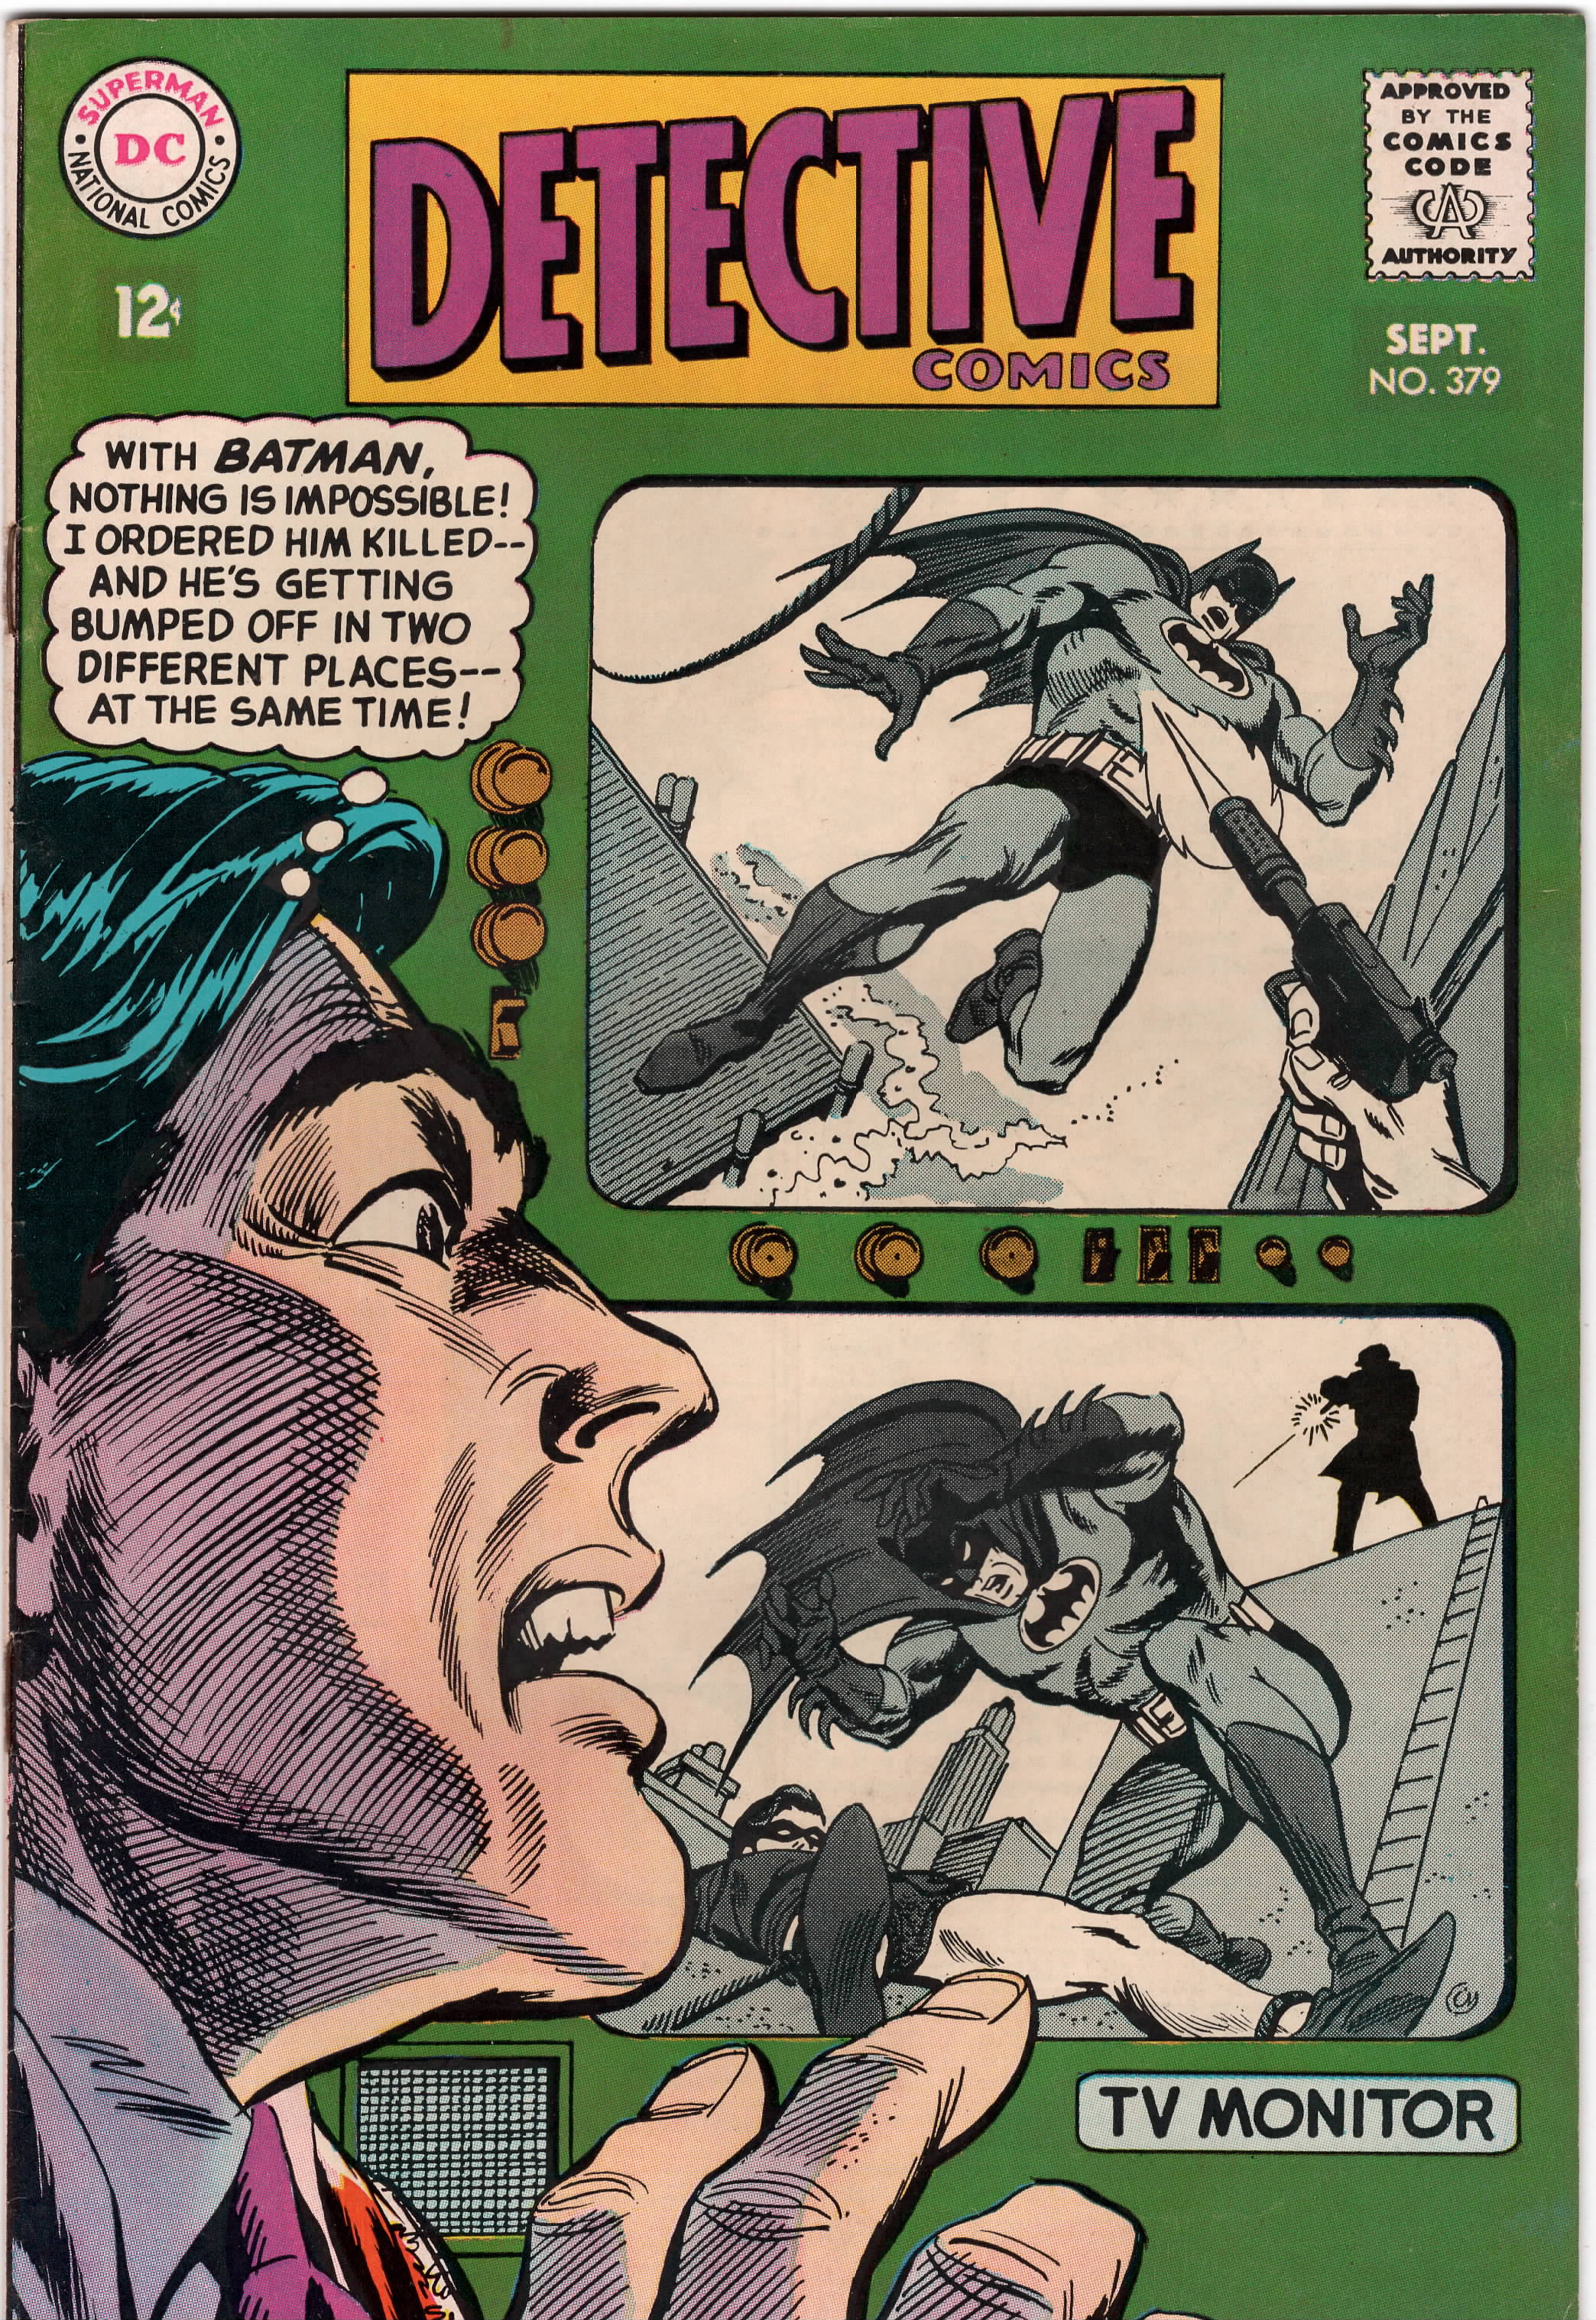 Detective Comics #379